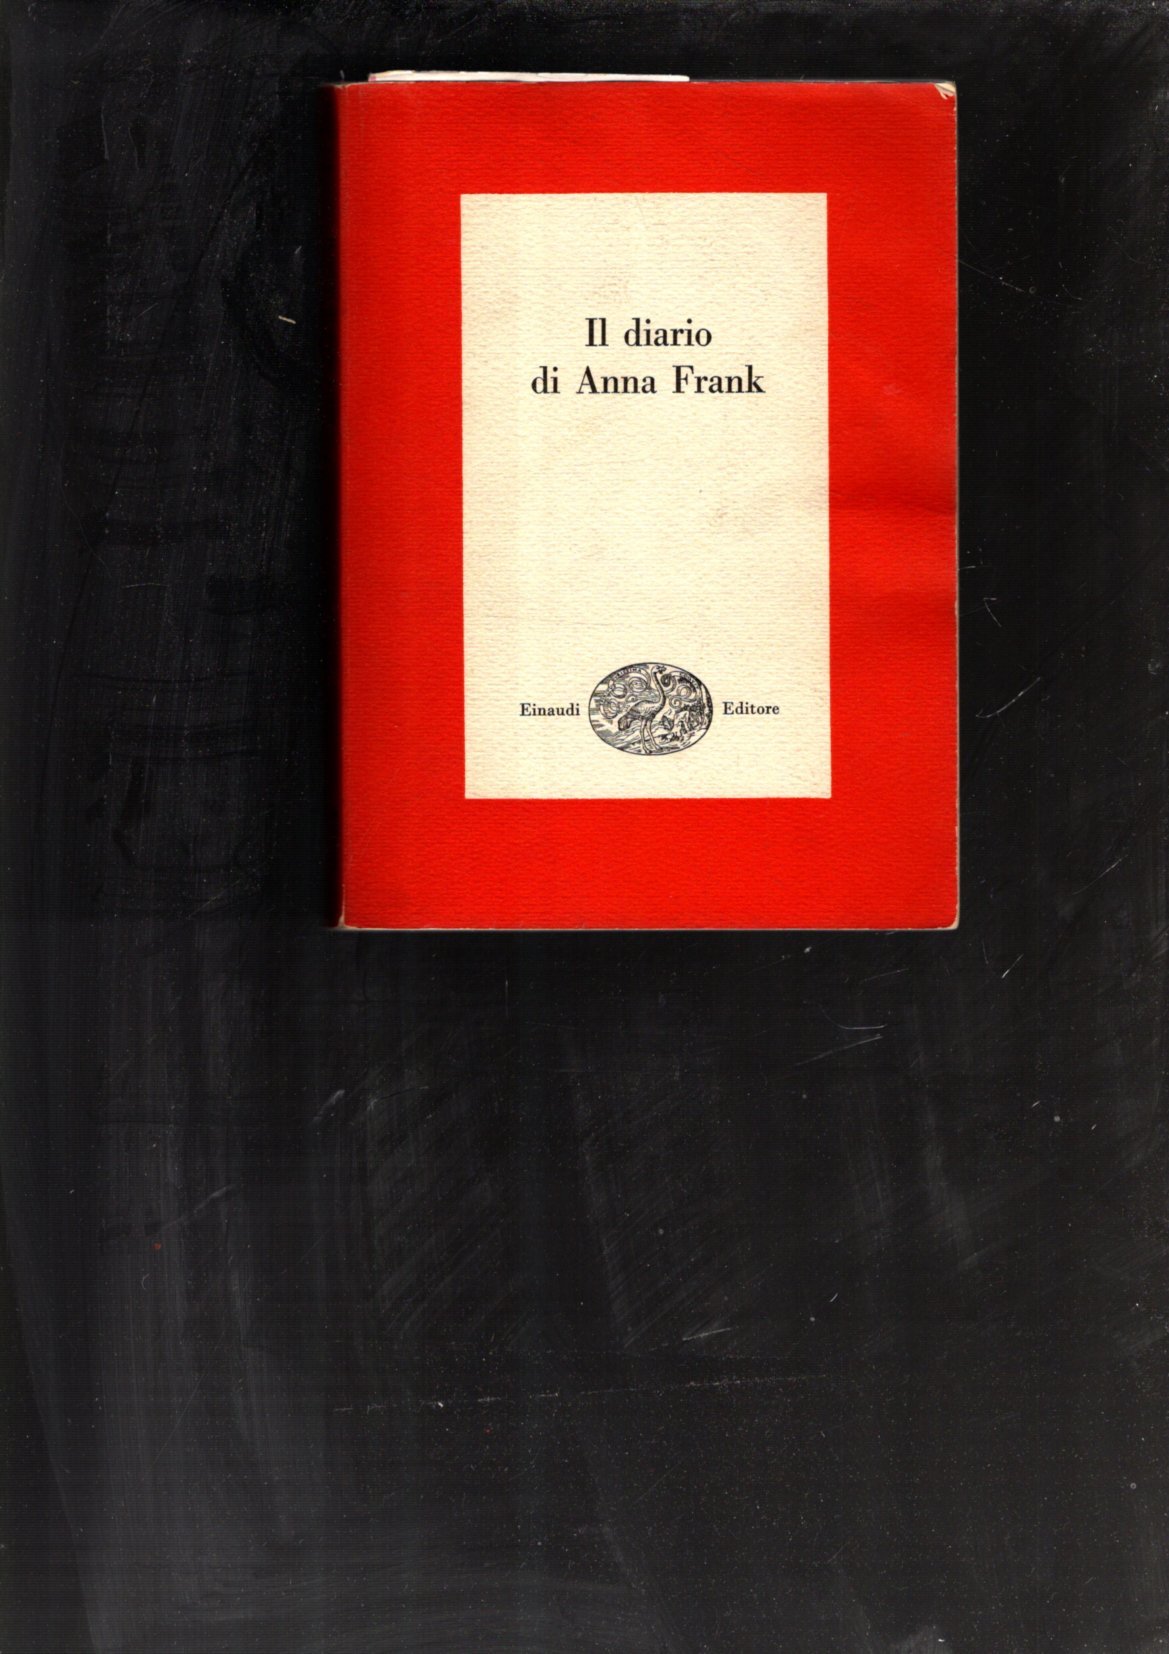 IL DIARIO DI ANNA FRANK - EINAUDI EDITORE 1954 - PREFAZIONE DI